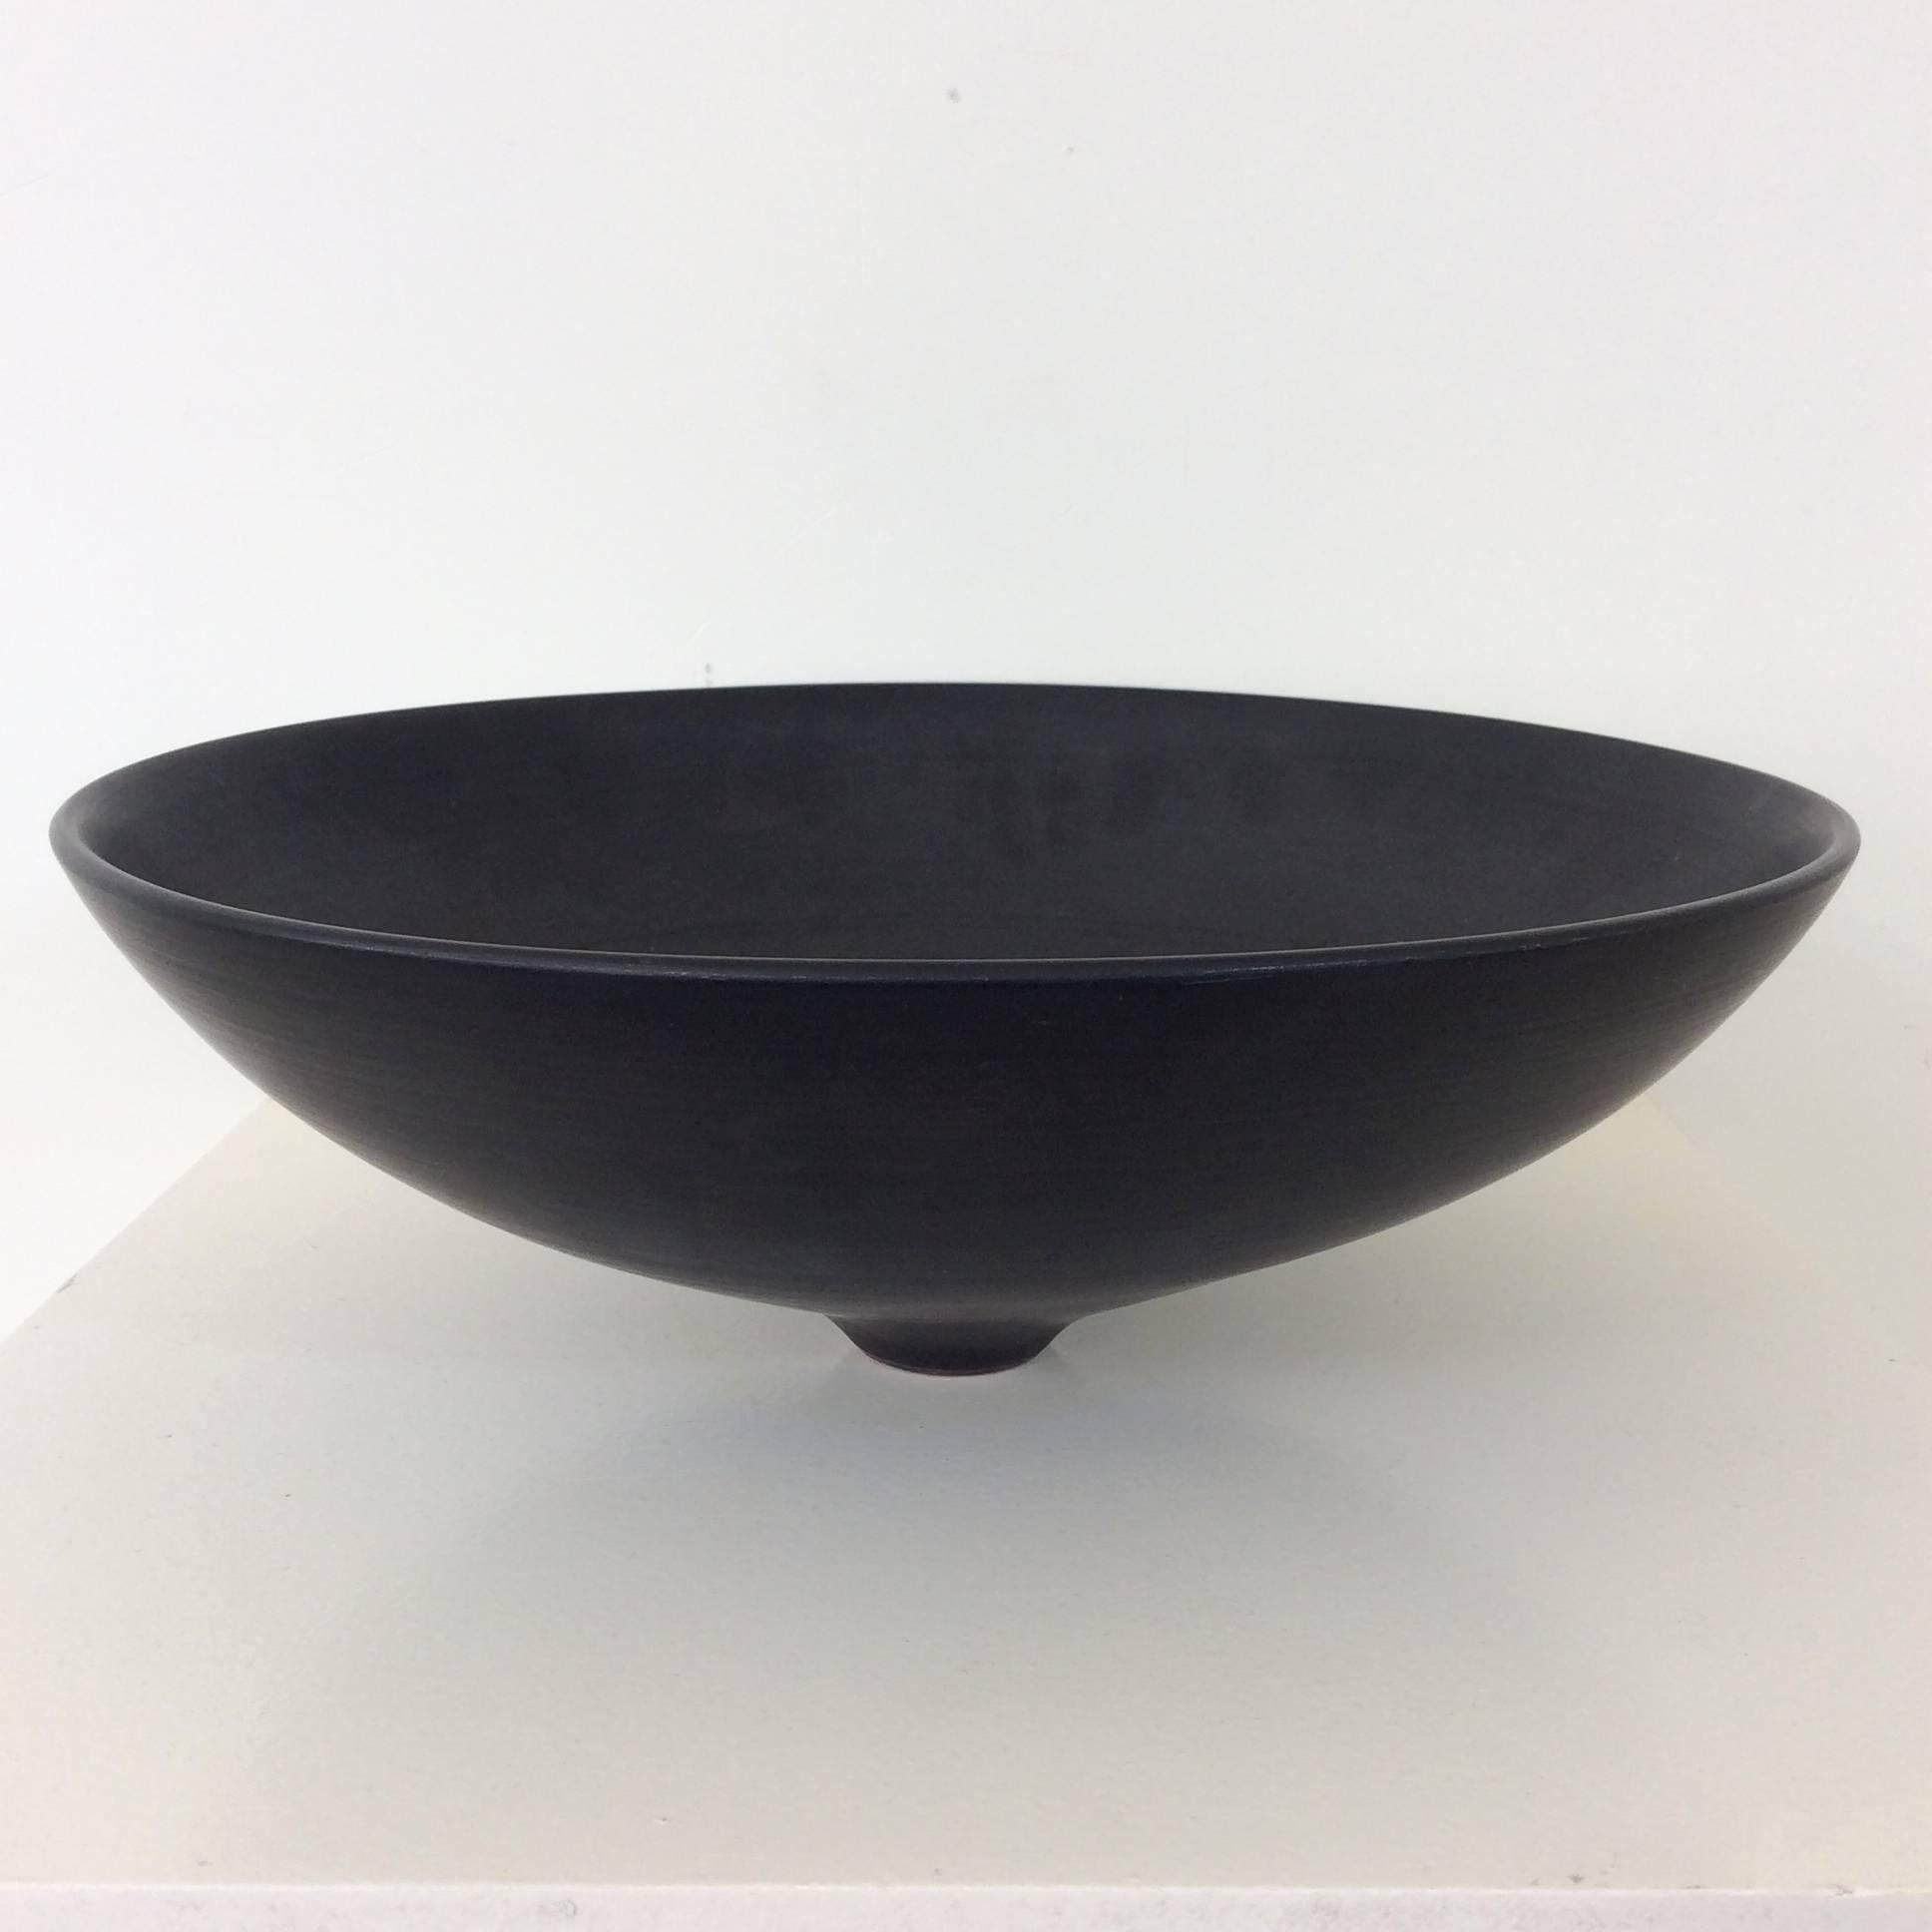 Nice Antonio Lampecco large black ceramic bowl, circa 1960, Belgium.
Dimensions: 37 cm diameter, 14 cm H.
Good original condition.
 